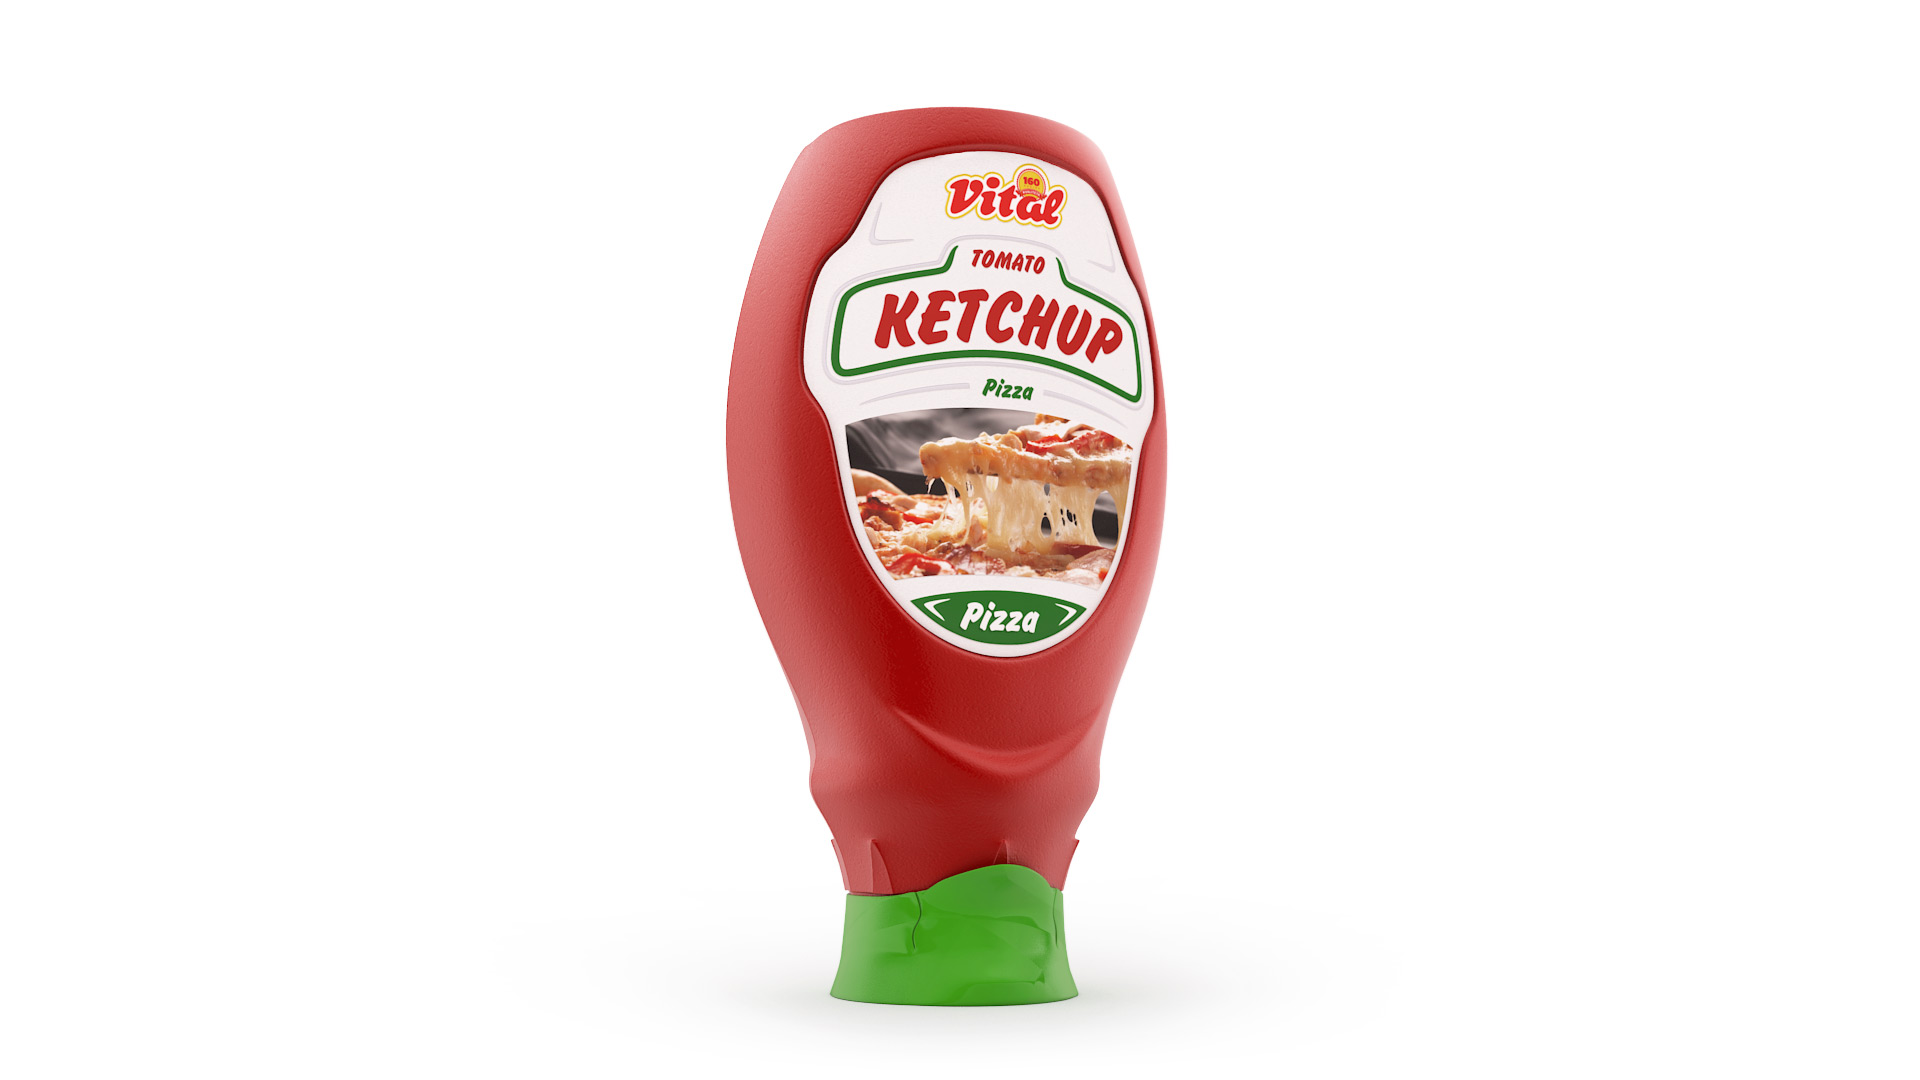 Vital tomato ketchup packaging design - plastic bottle